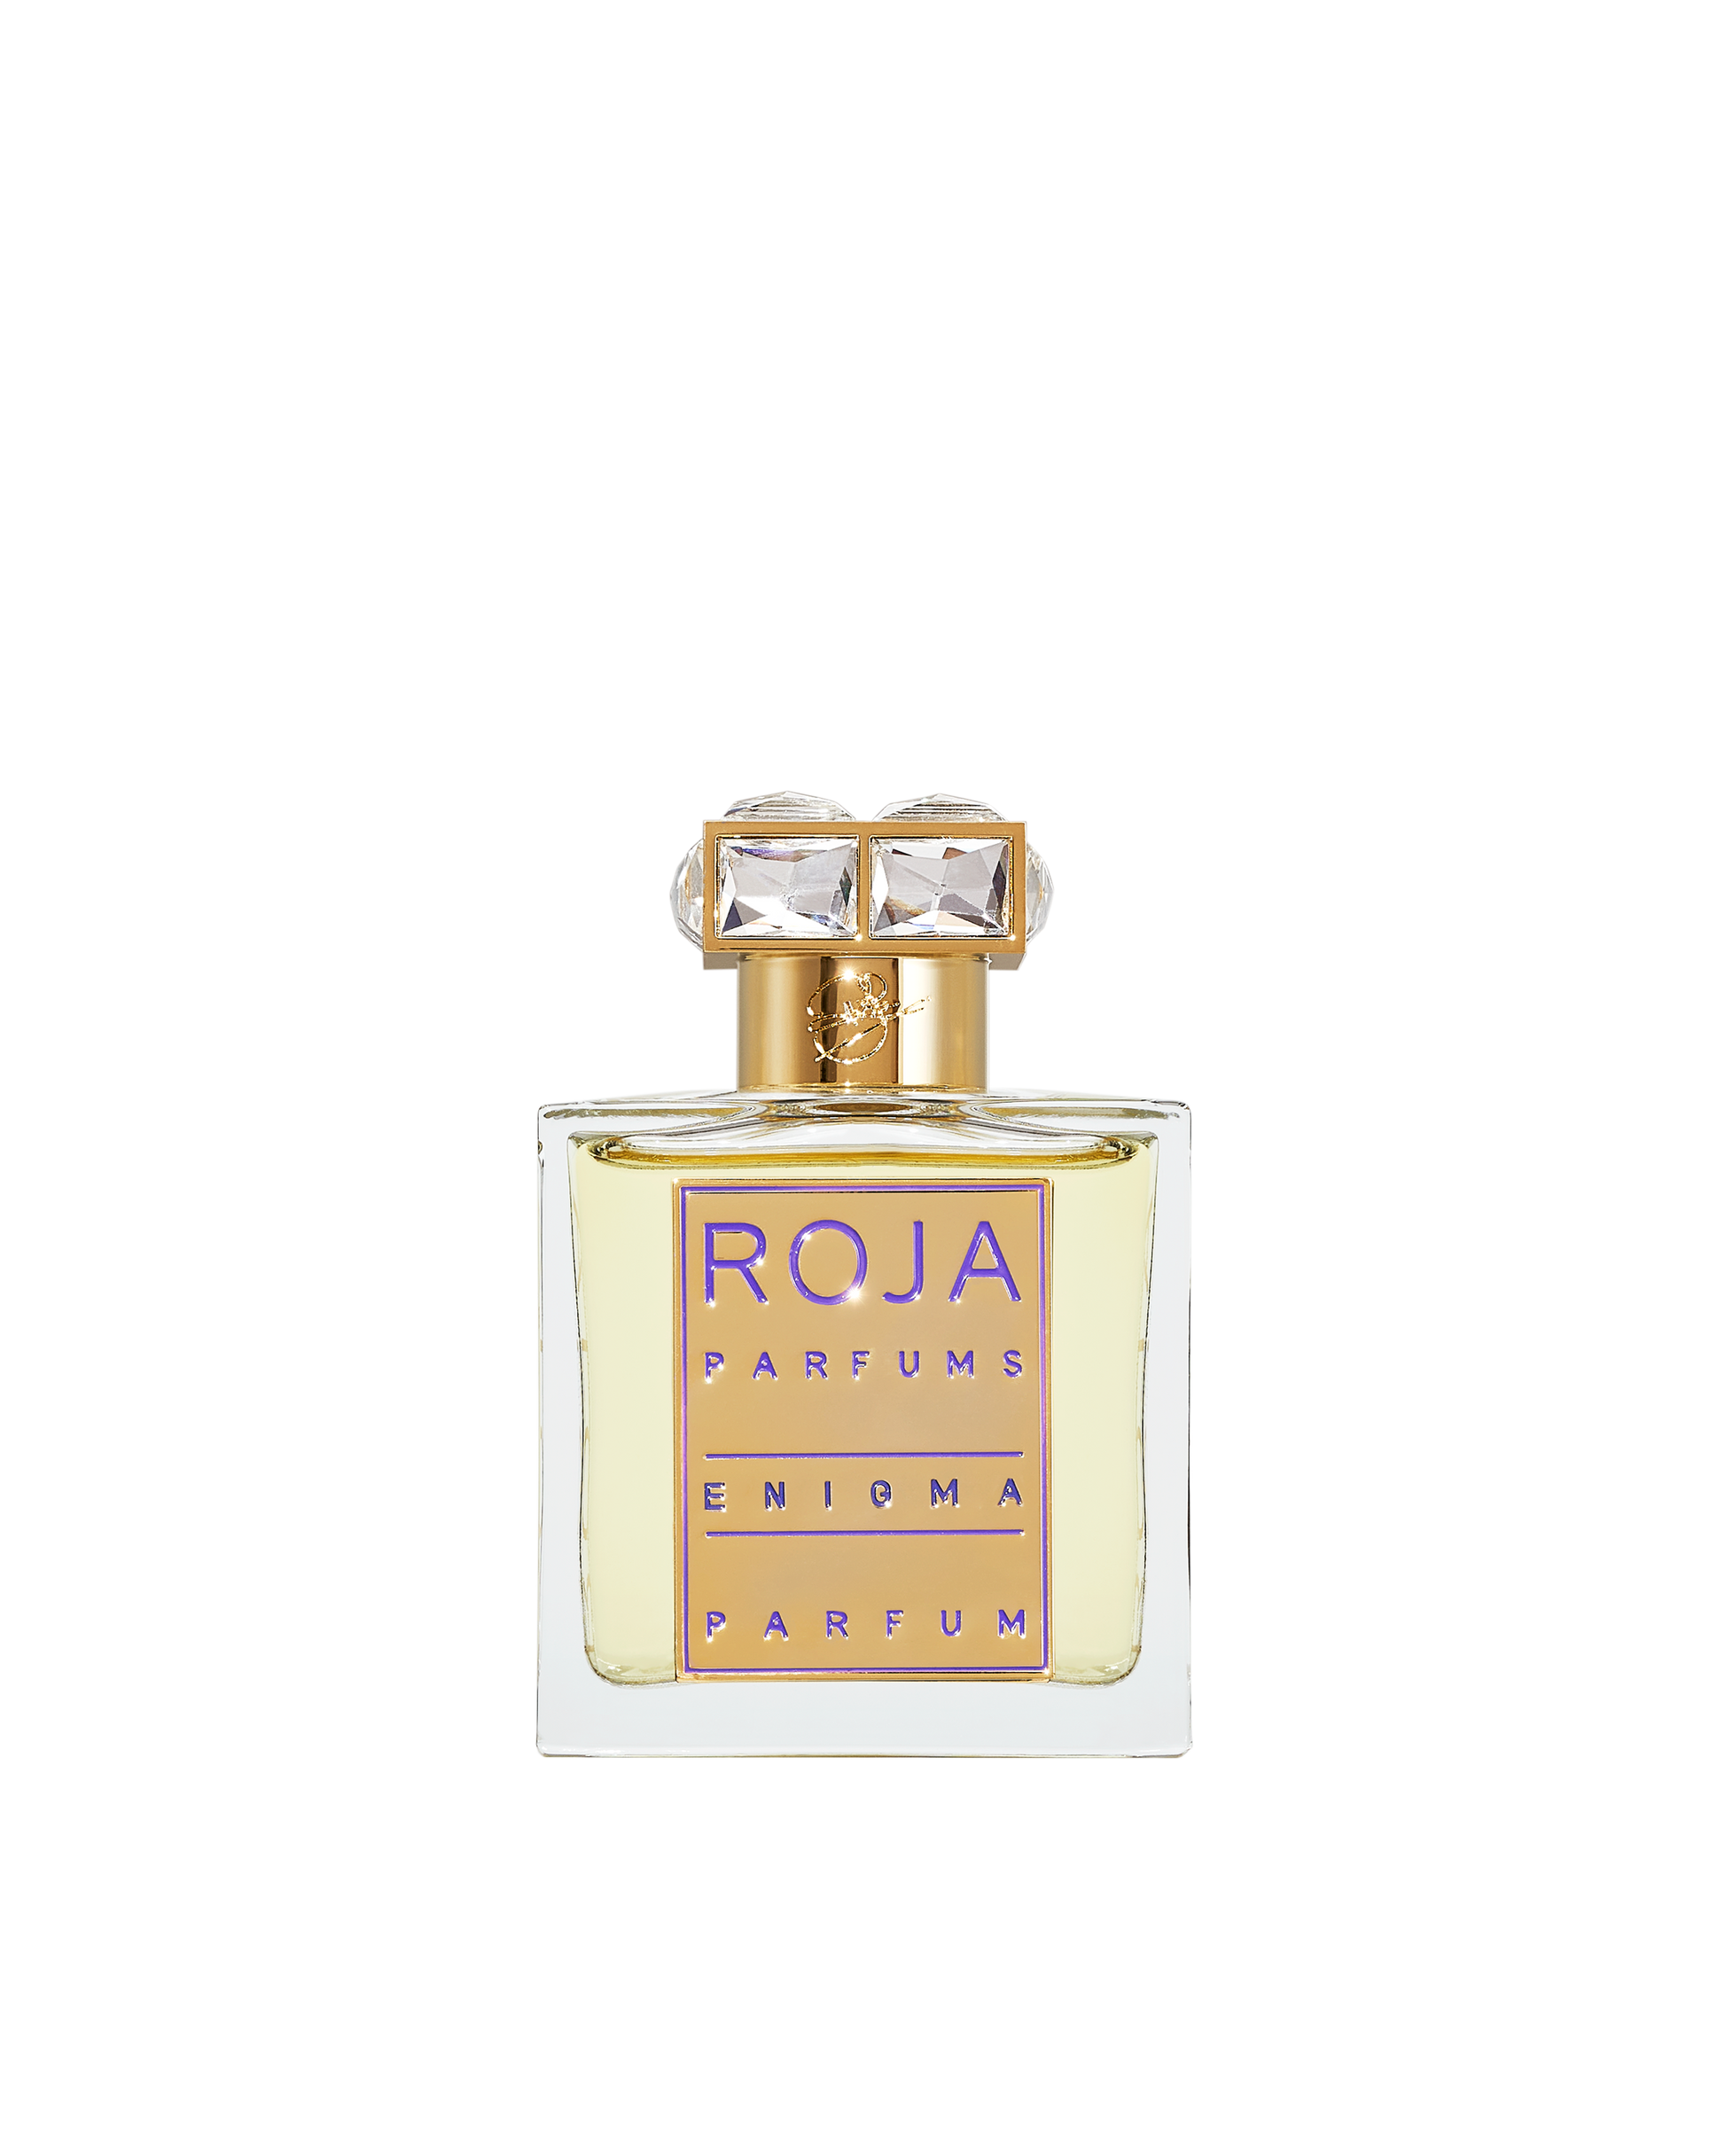 Enigma Pour Femme Parfum Roja Parfums 50ml